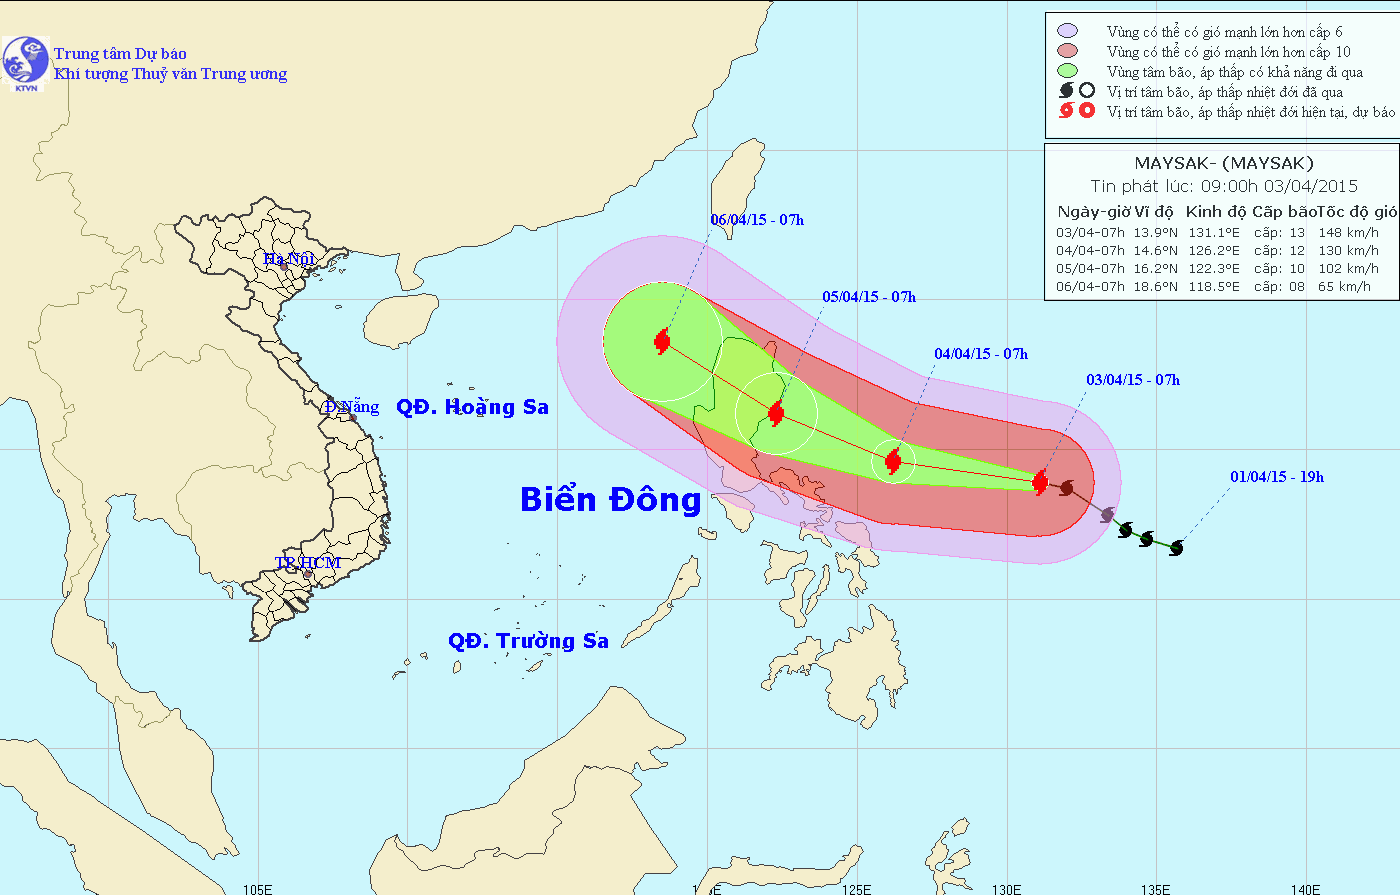 Việt Nam chuẩn bị ứng phó với siêu bão Maysak